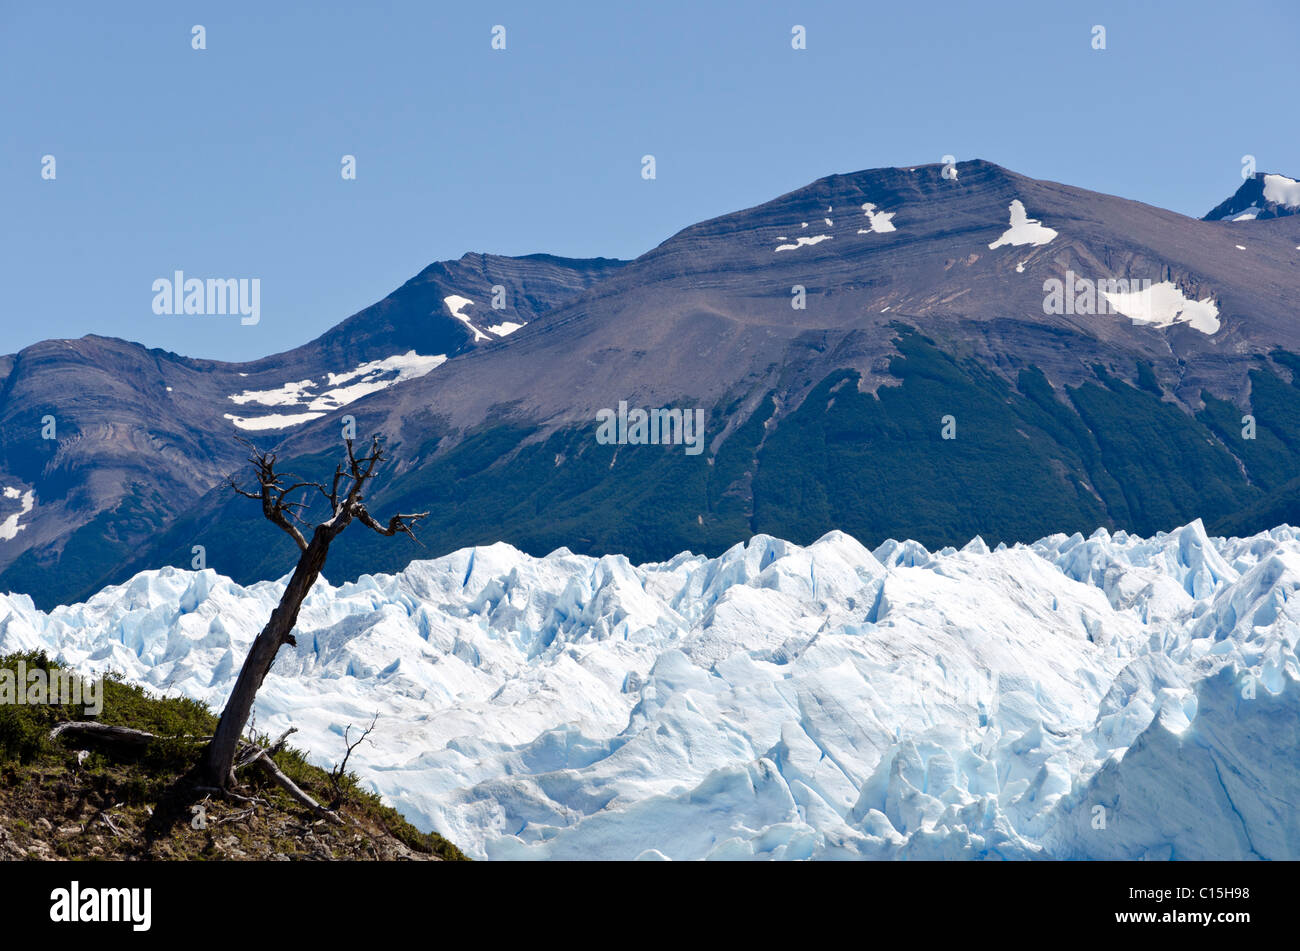 Perito Moreno glacier, Patagonia, Argentina Stock Photo